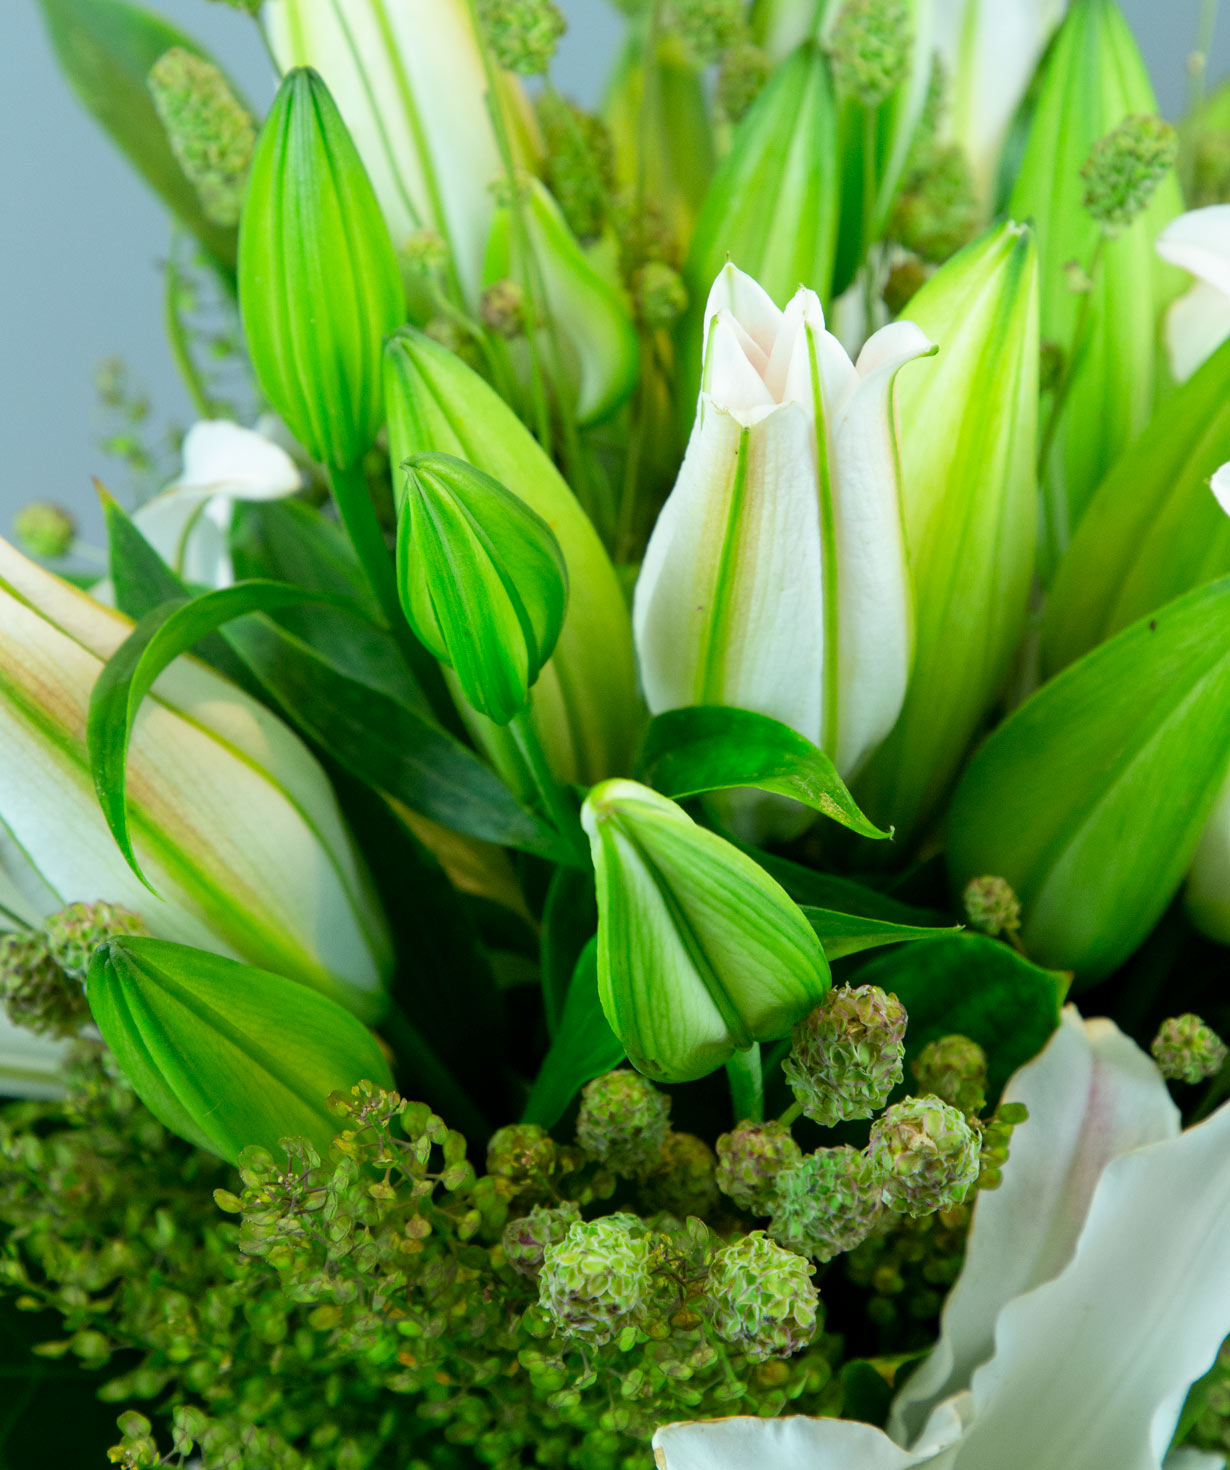 Ծաղկեփունջ «Եսենիցե» լիլիաներով և դաշտային ծաղիկներով